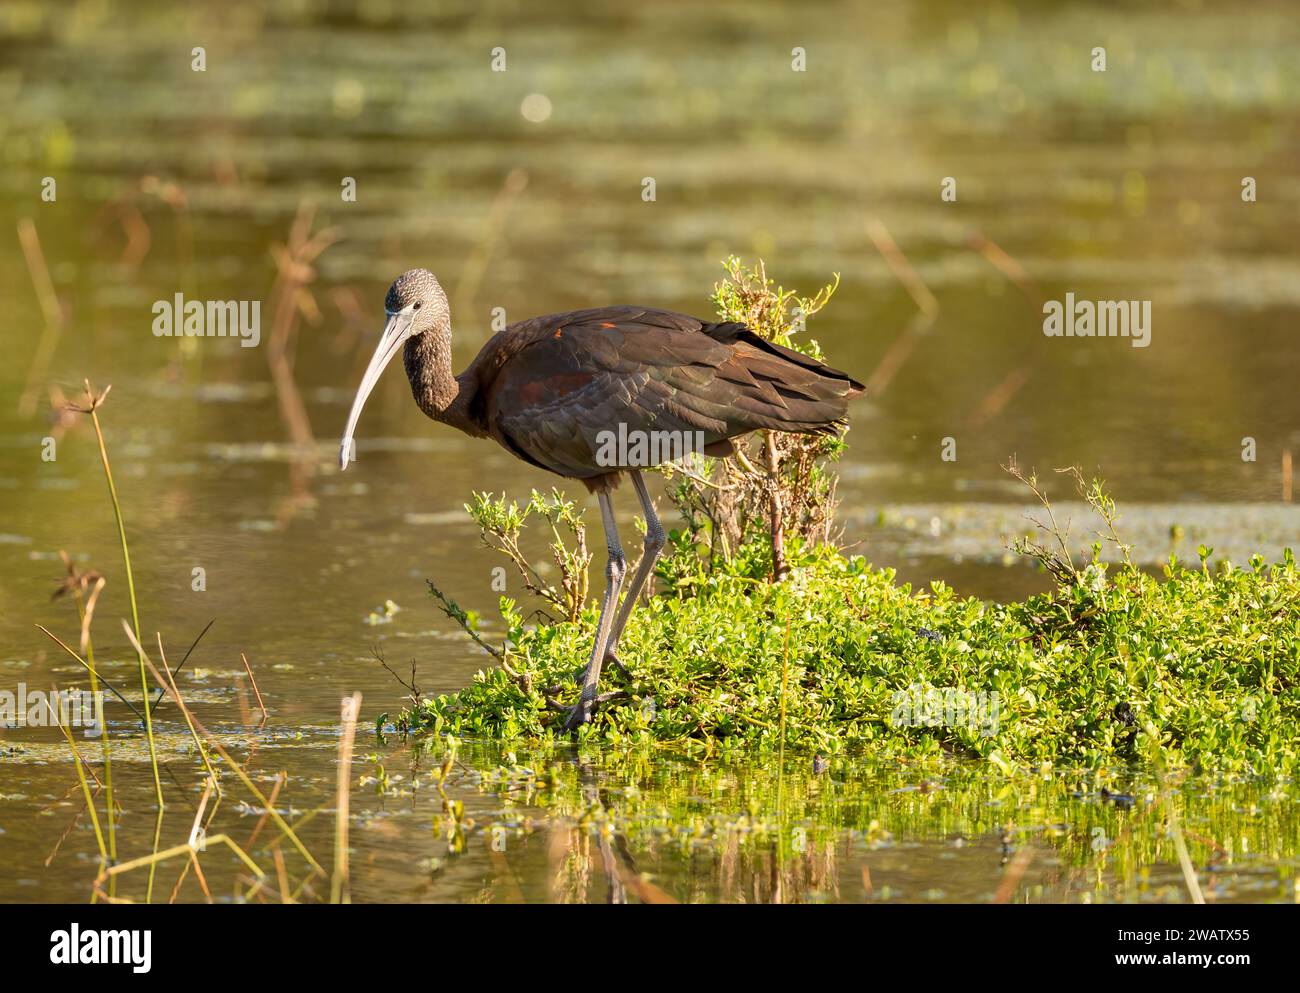 L'ibis lucido (Plegadis falcinellus) con la sua lucentezza metallica iridescente, vive paludi, pianure fangose e zone umide in gran parte dell'Australia. Foto Stock